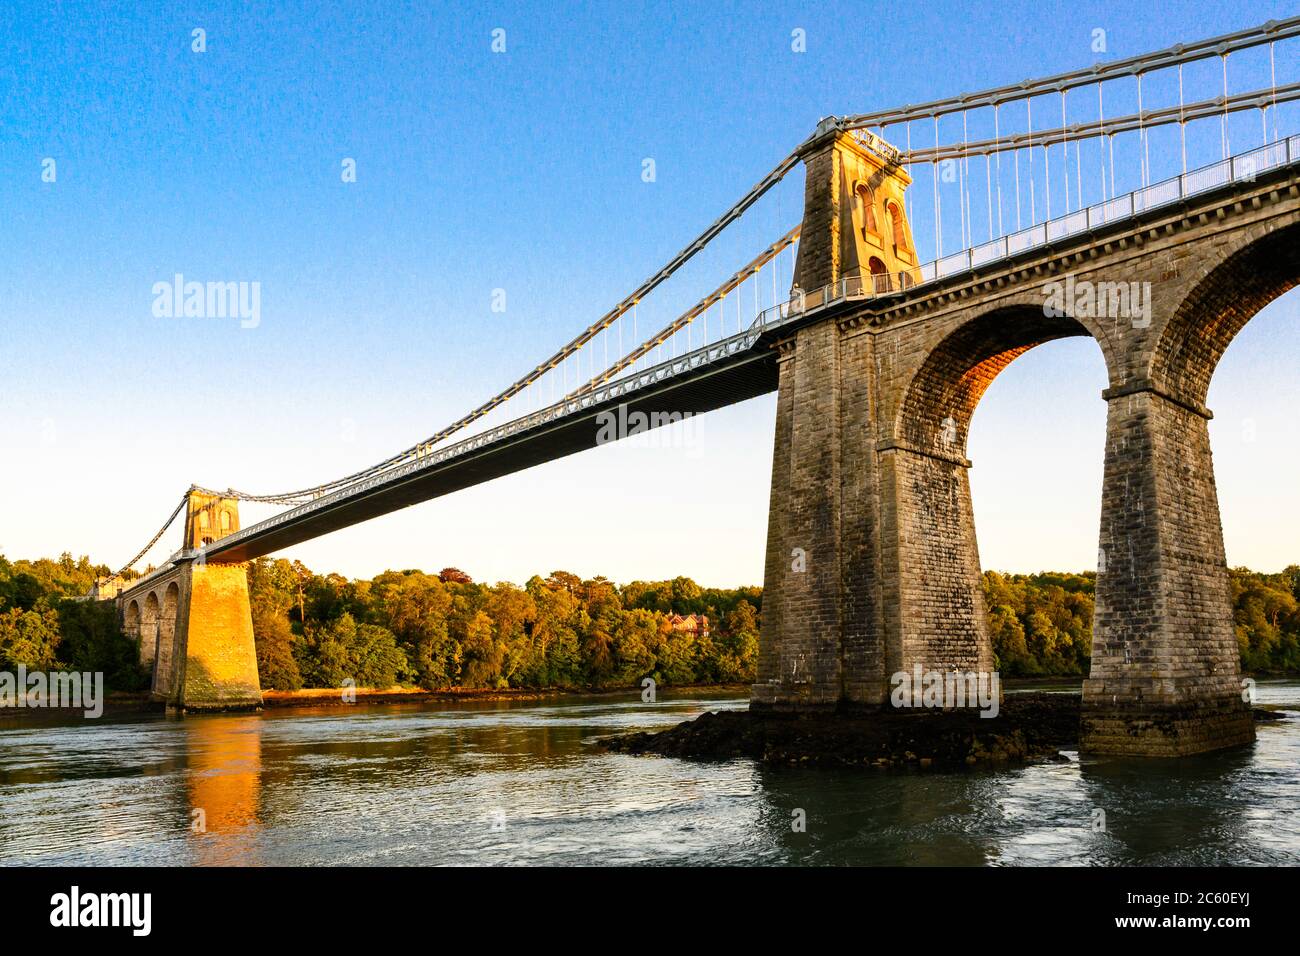 Le pont suspendu de Menai (1826), conçu par Thomas Telford, relie le continent du pays de Galles à l'île d'Anglesey. Pont Menai, pays de Galles, Royaume-Uni. Banque D'Images